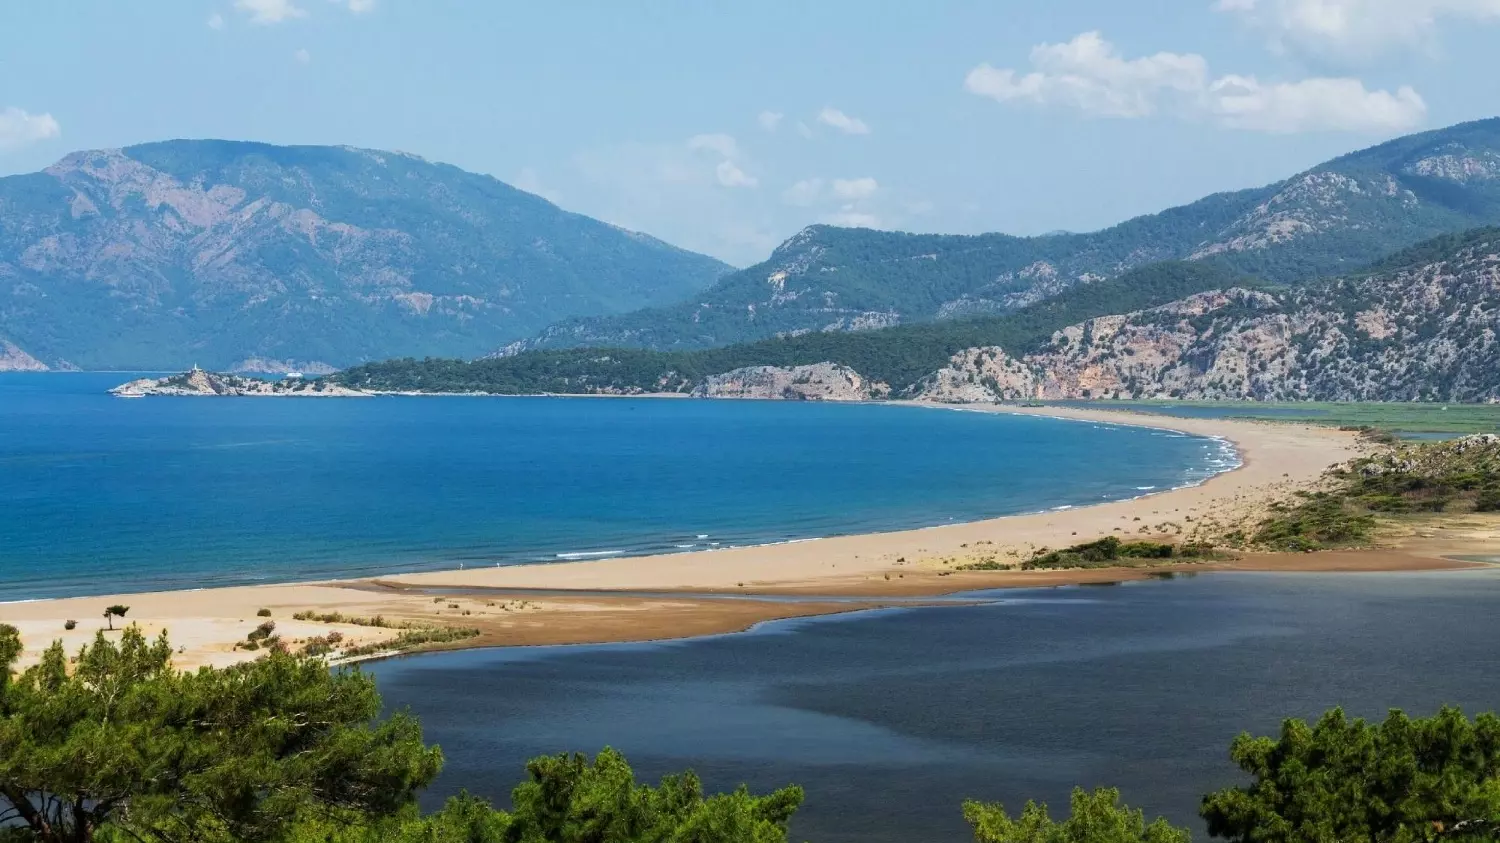 Пляж Iztuzu Beach — лучший пляж Турции по версии tripadvisor